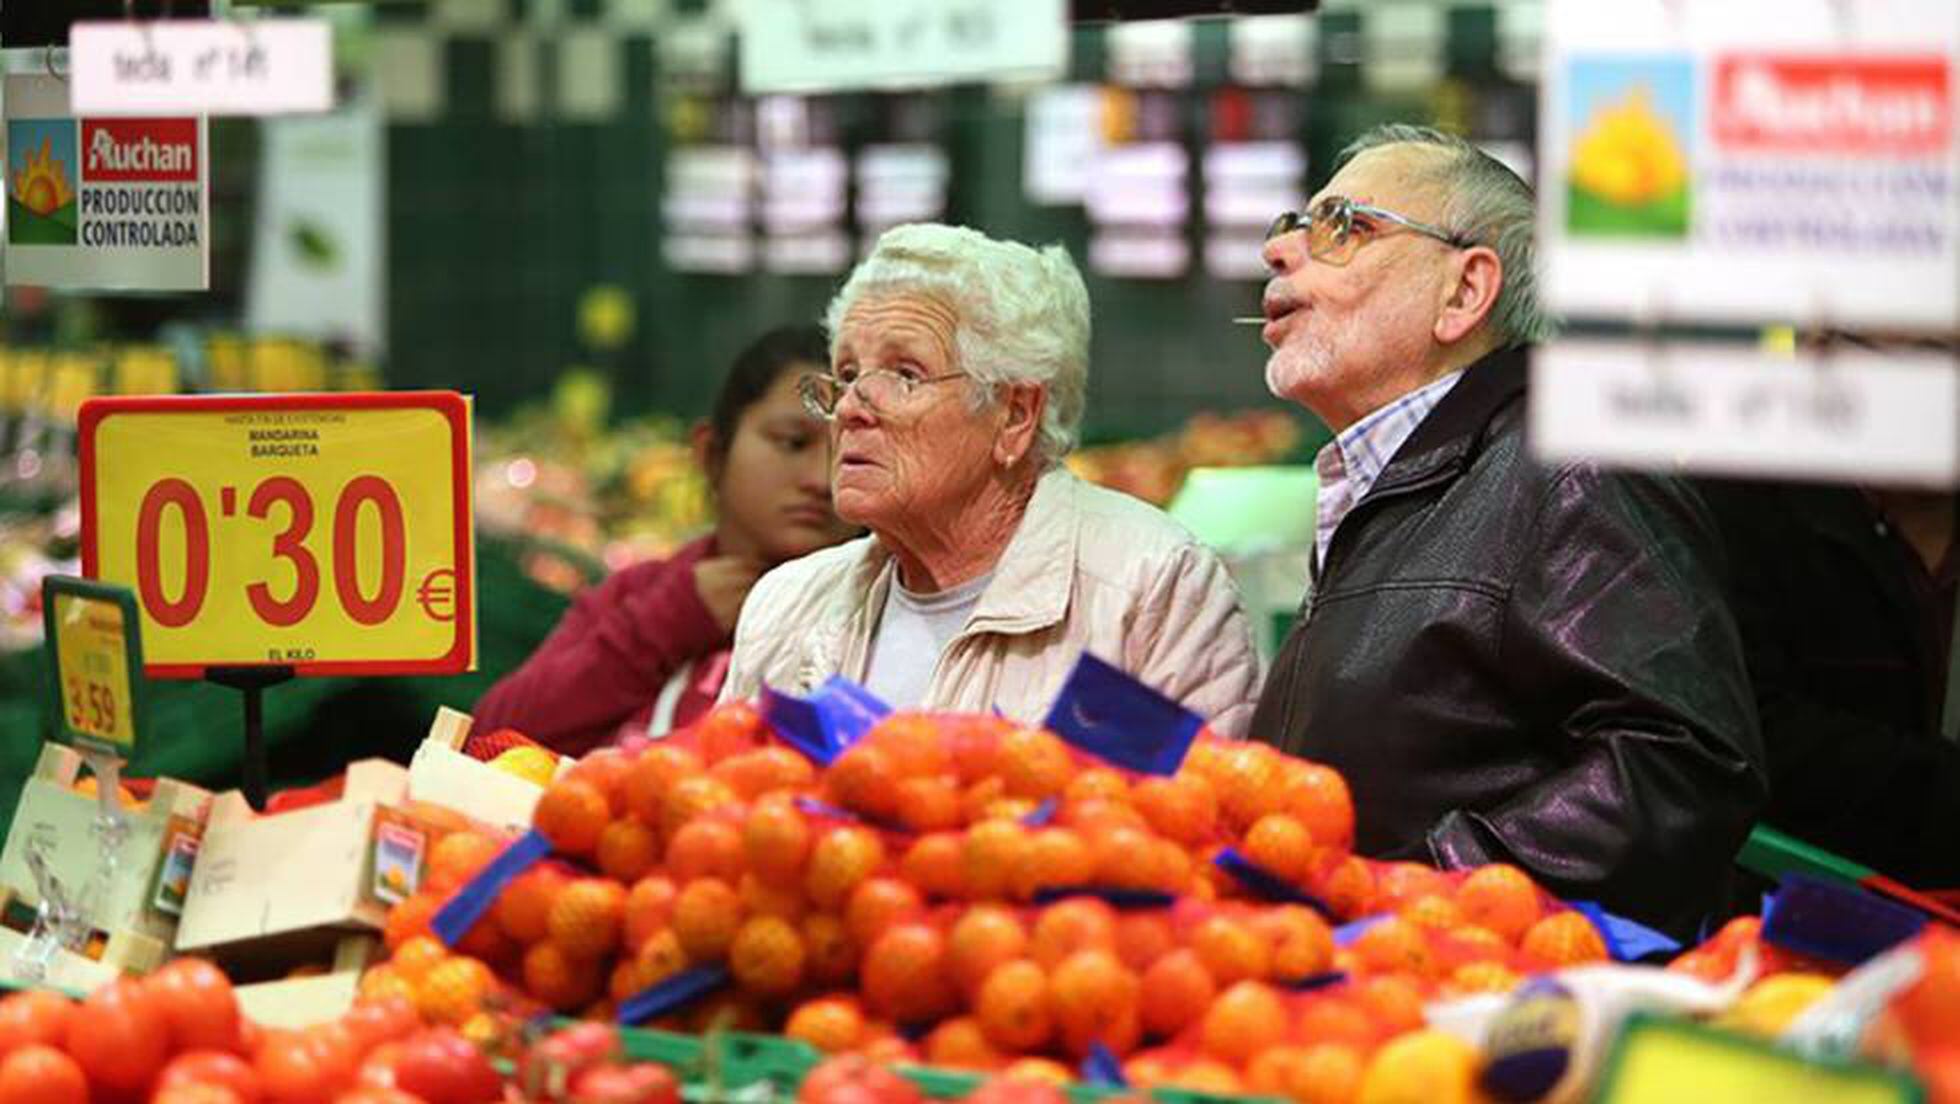 La Diferencia Entre El Supermercado Mas Caro Y Mas Barato 3 000 Euros Al Ano Economia El Pais